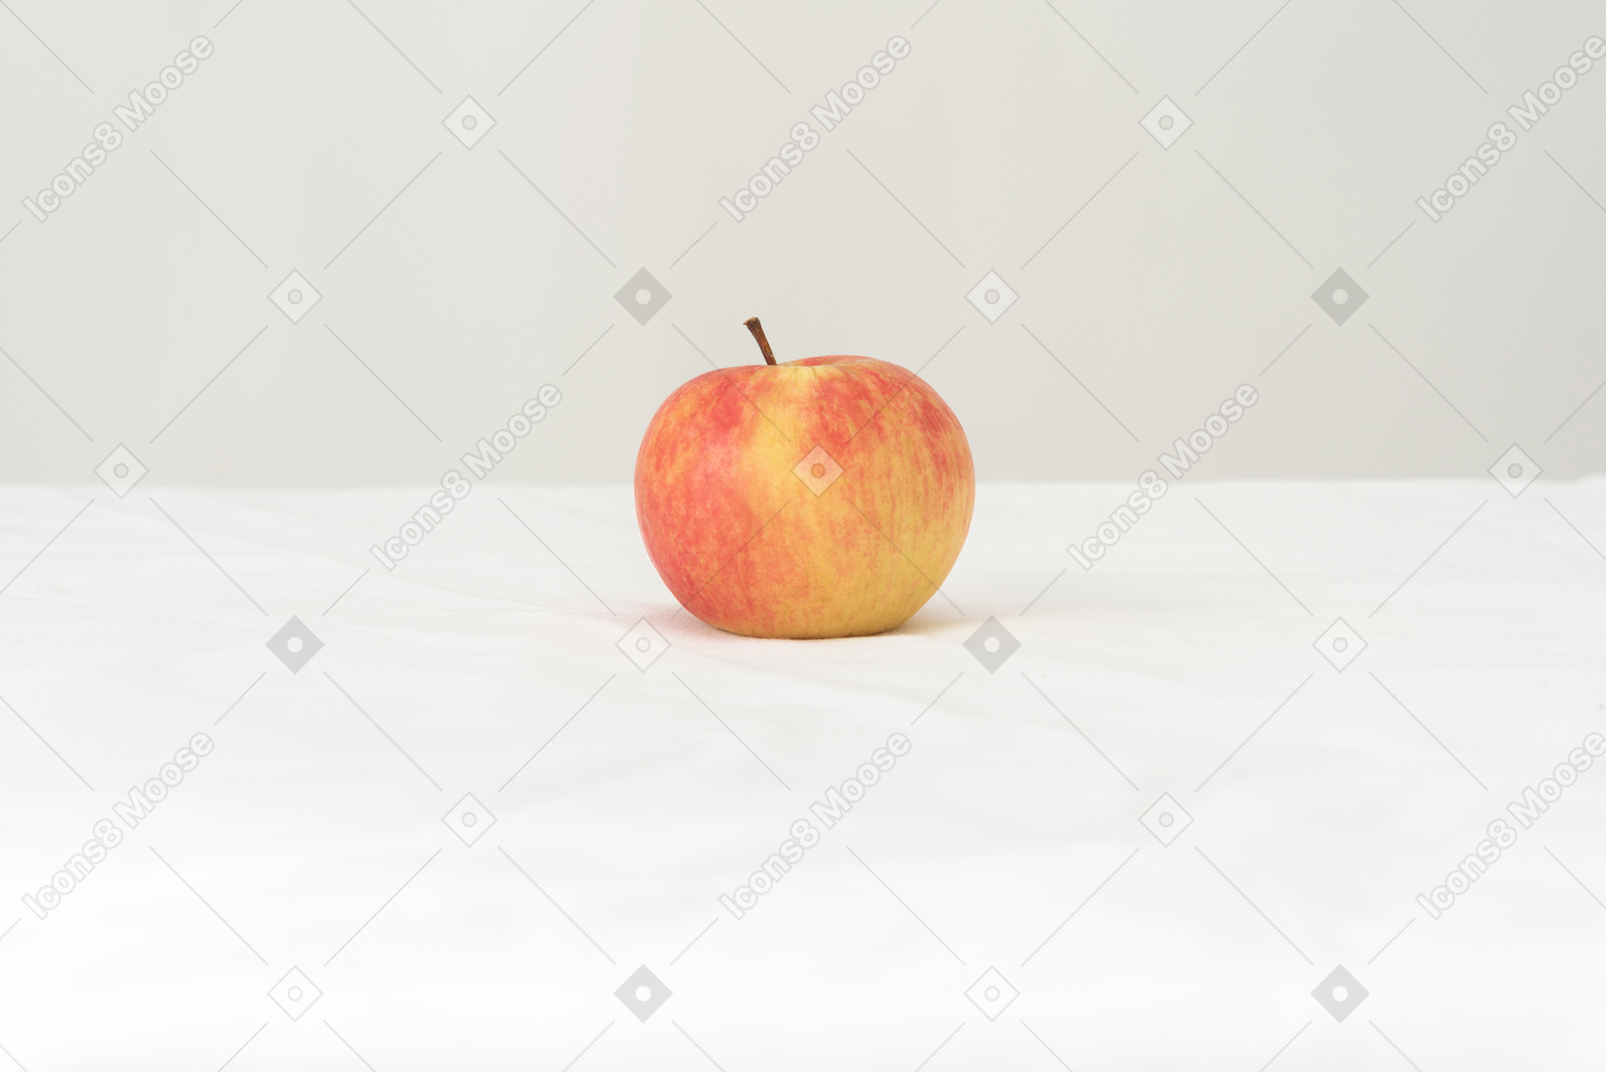 Una mela al giorno toglie il medico di torno